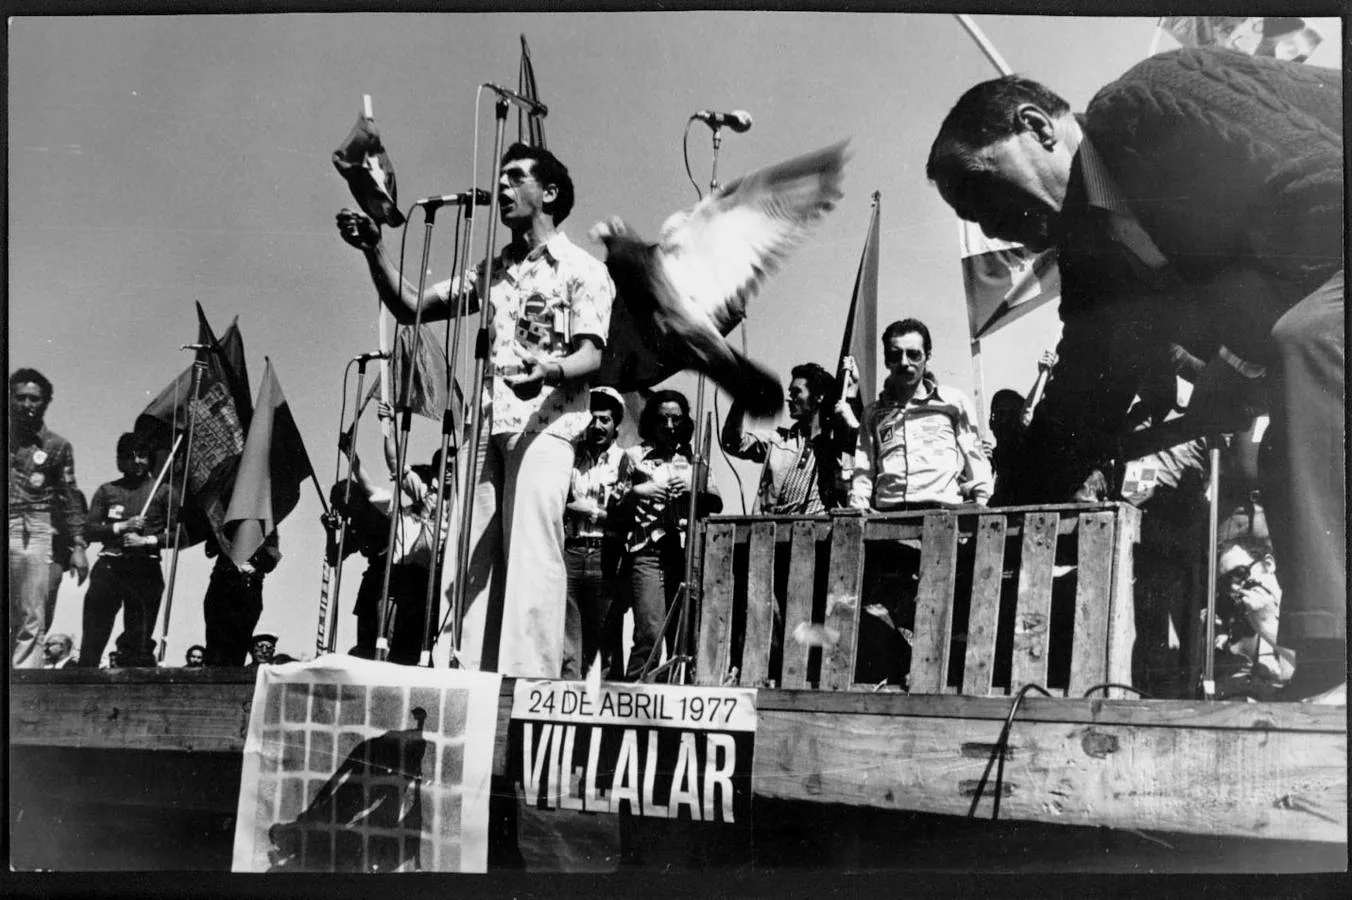 1977. Grupo musical actuando en Villalar.